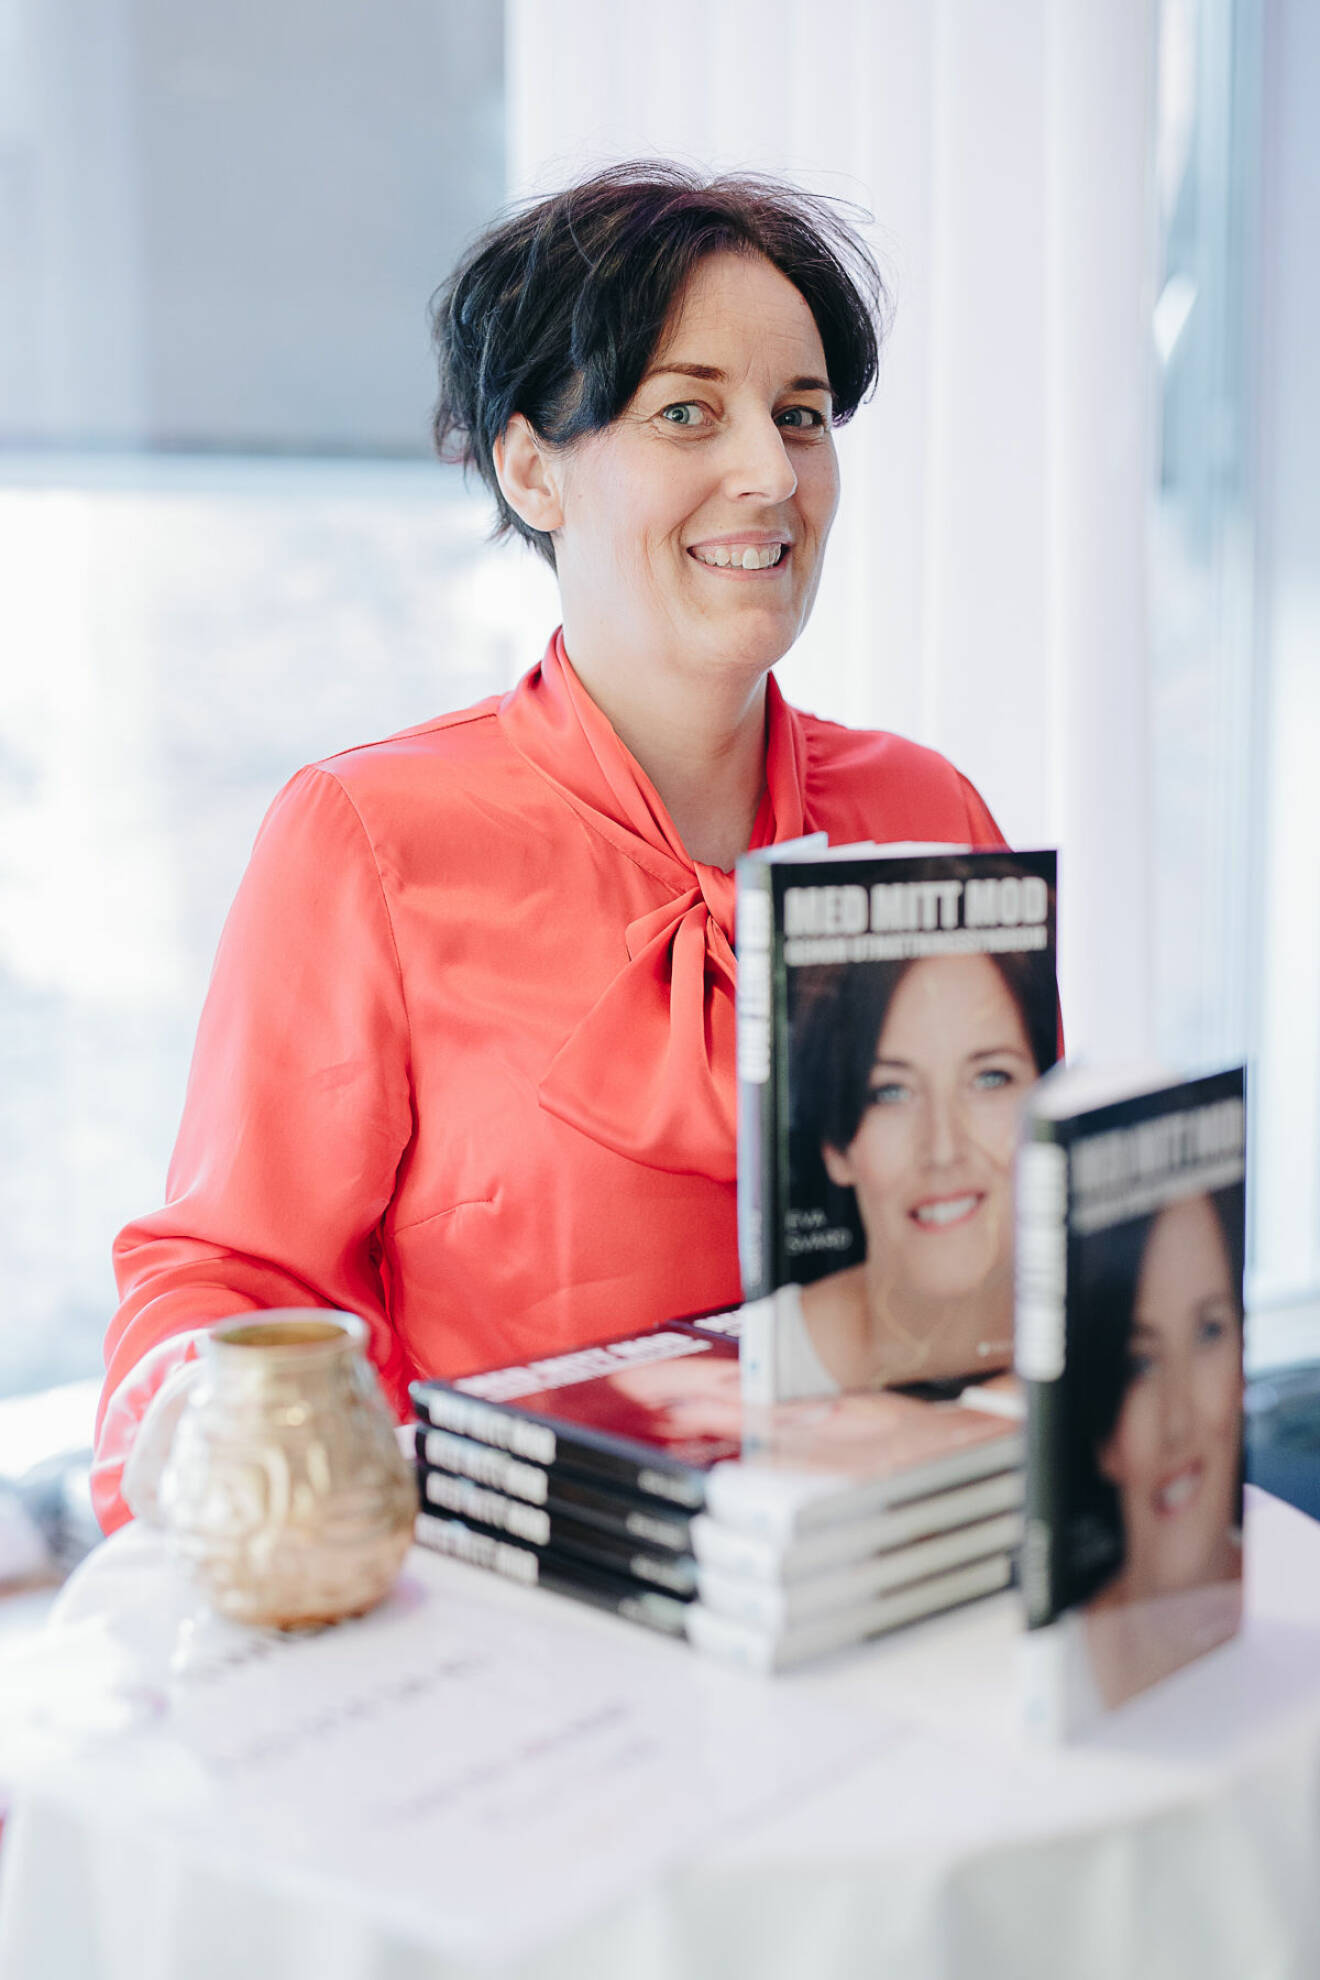 Eva Svärd med sin bok "Med mitt mod genom utmattningssyndrom"